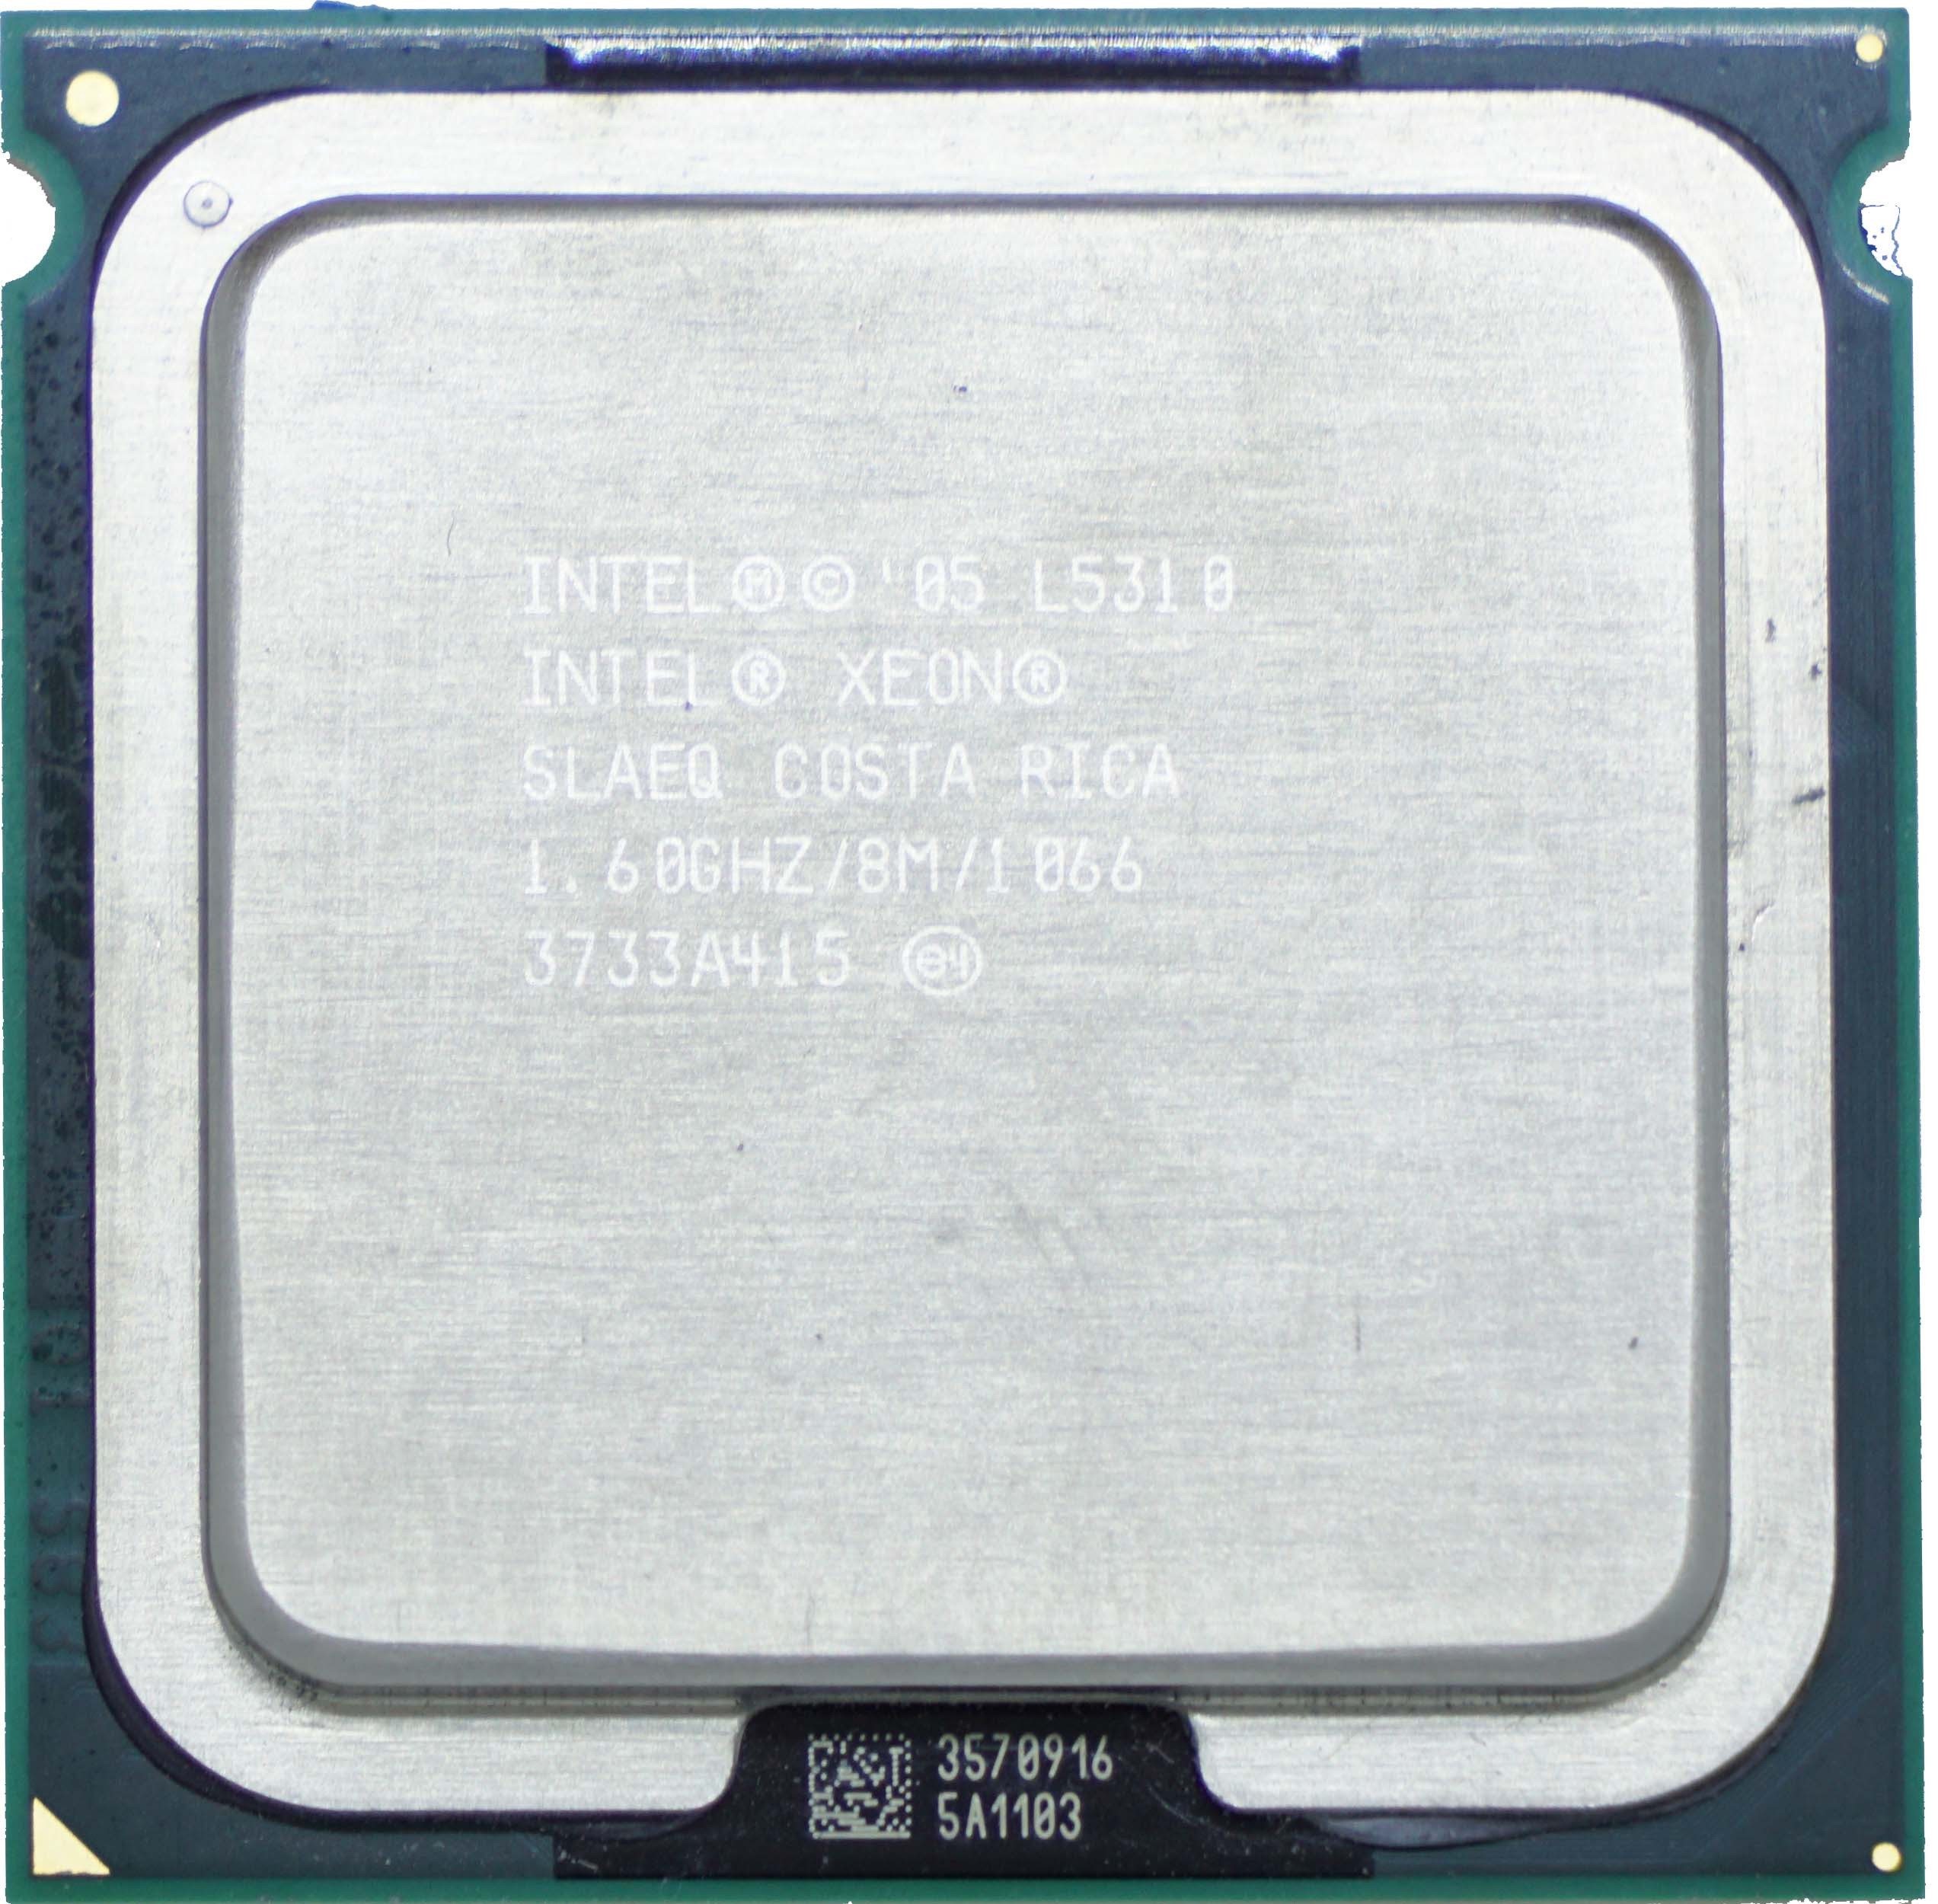 Intel Xeon L5310 (SLAEQ) 1.60Ghz Quad (4) Core LGA771 50W CPU